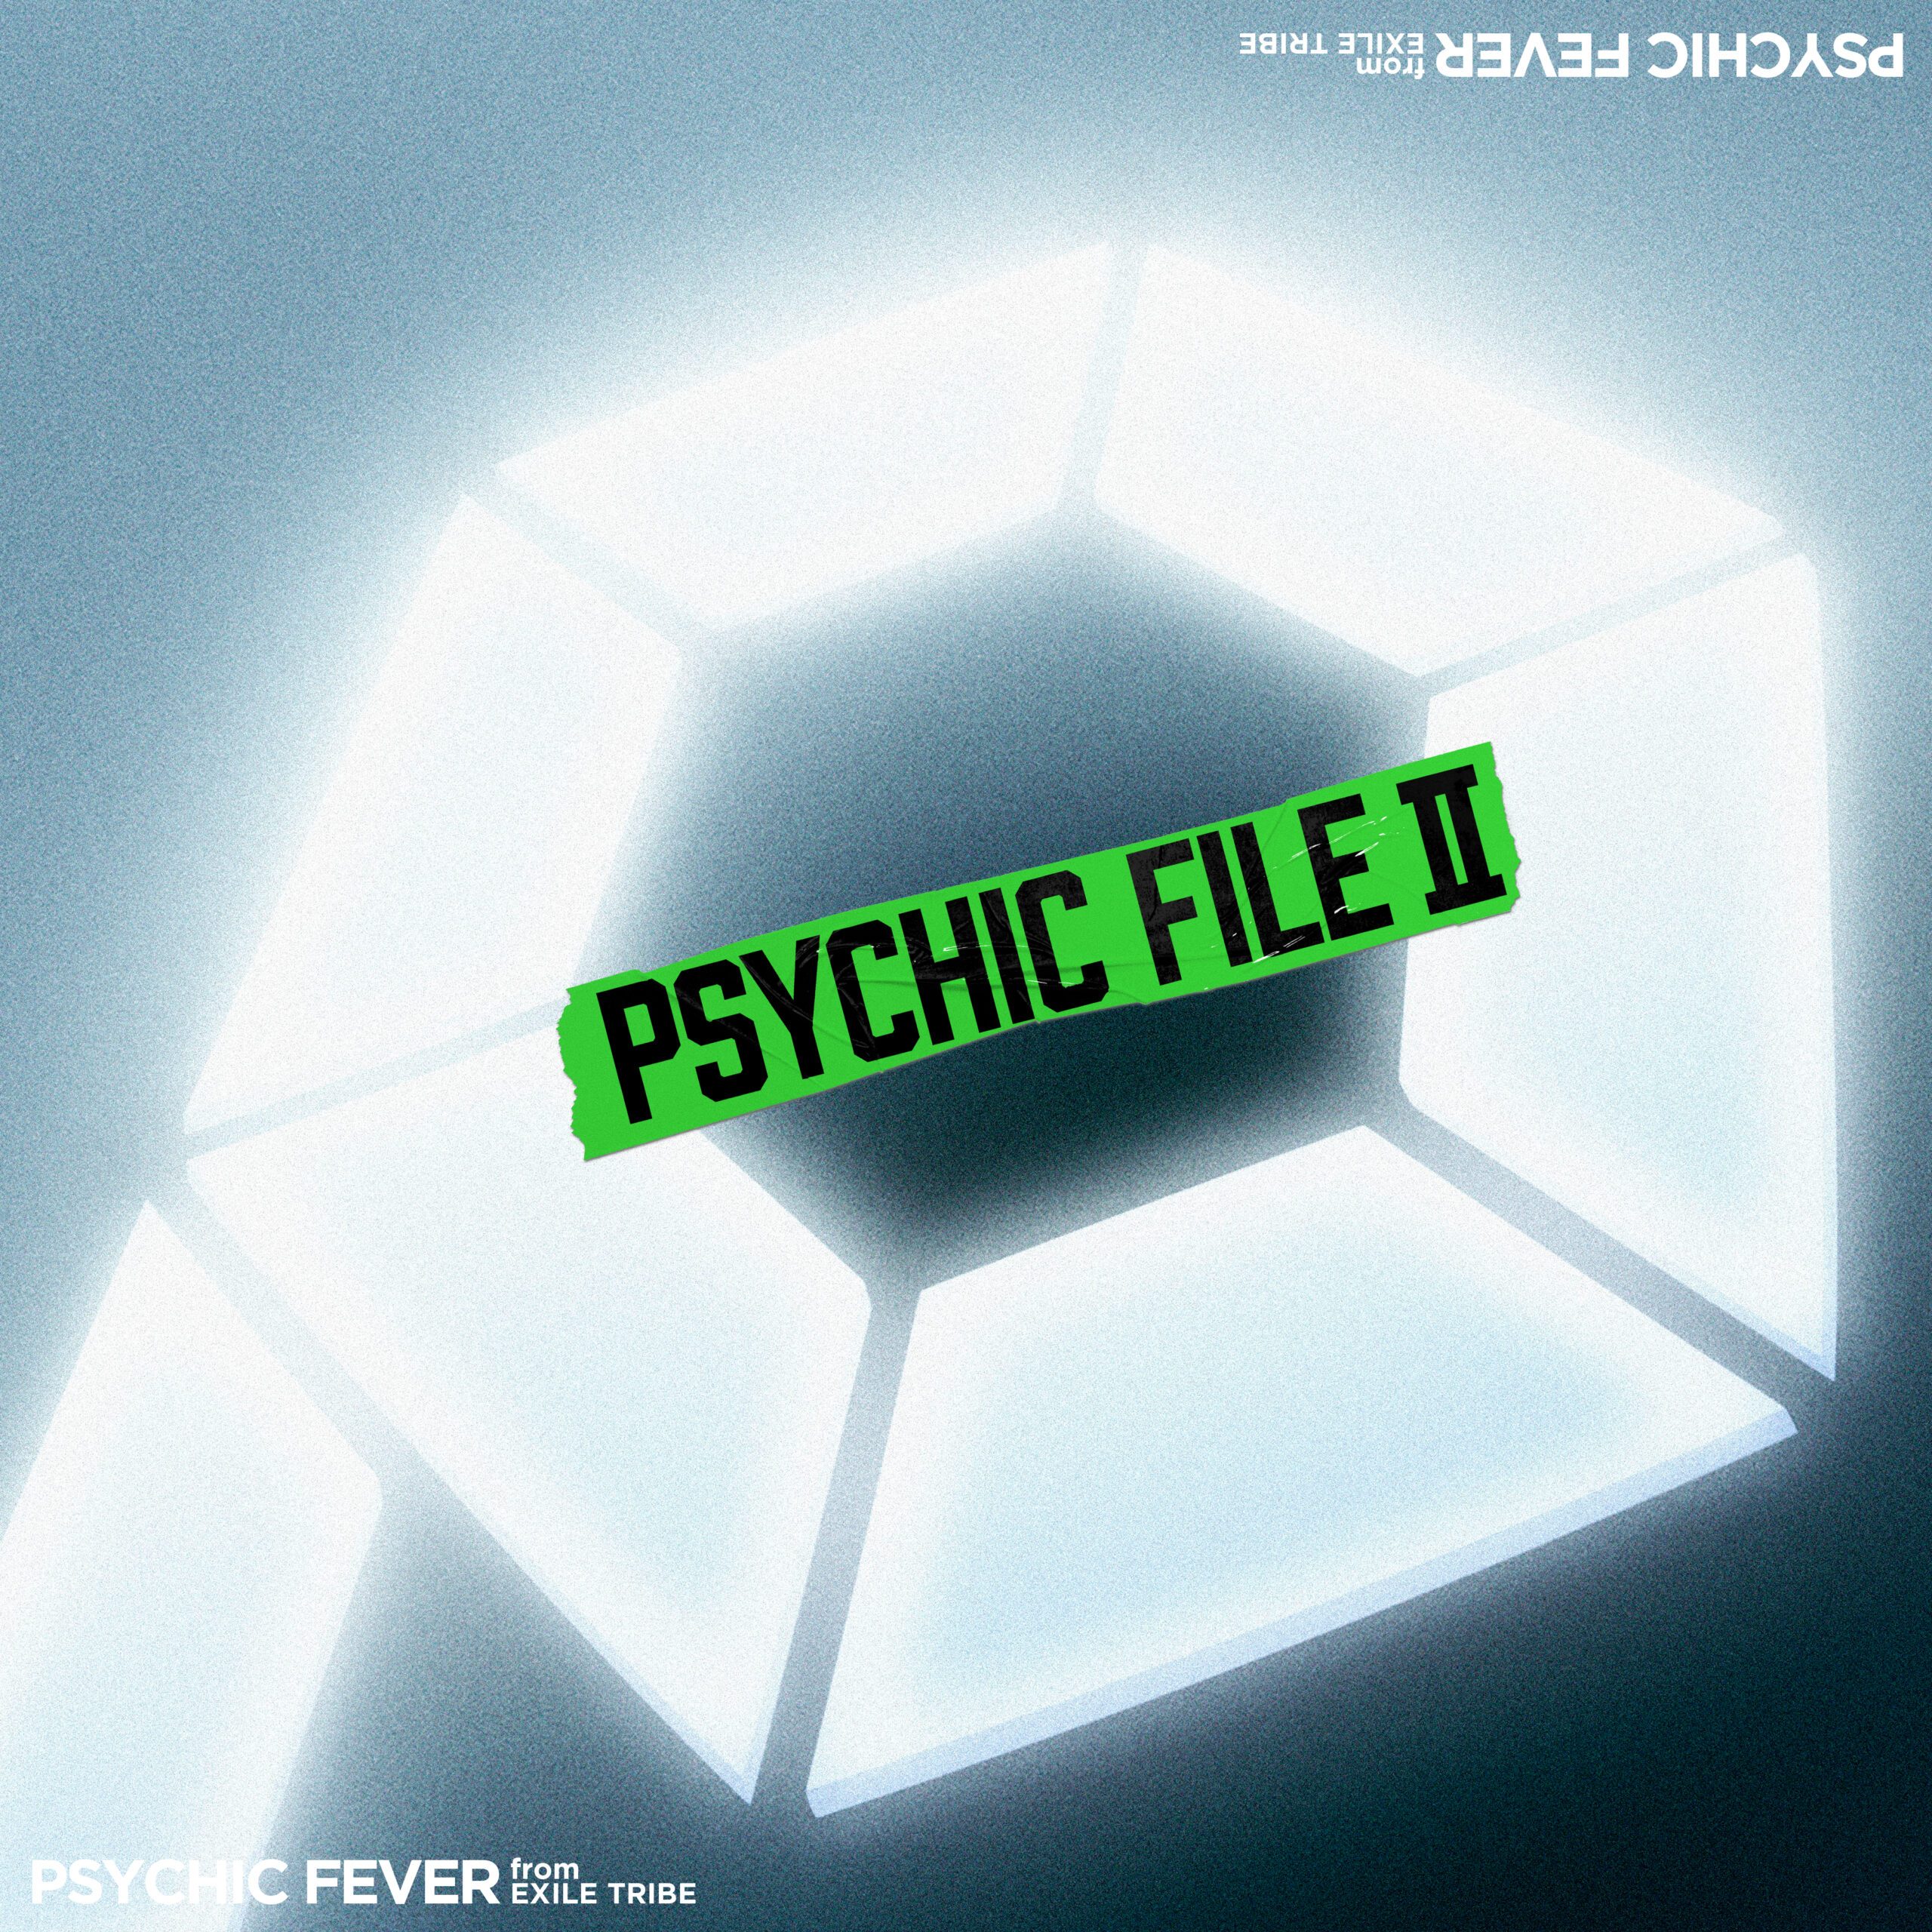 4月3日に発売されたセカンドアルバム「PSYCHIC FILEⅡ」のジャケット